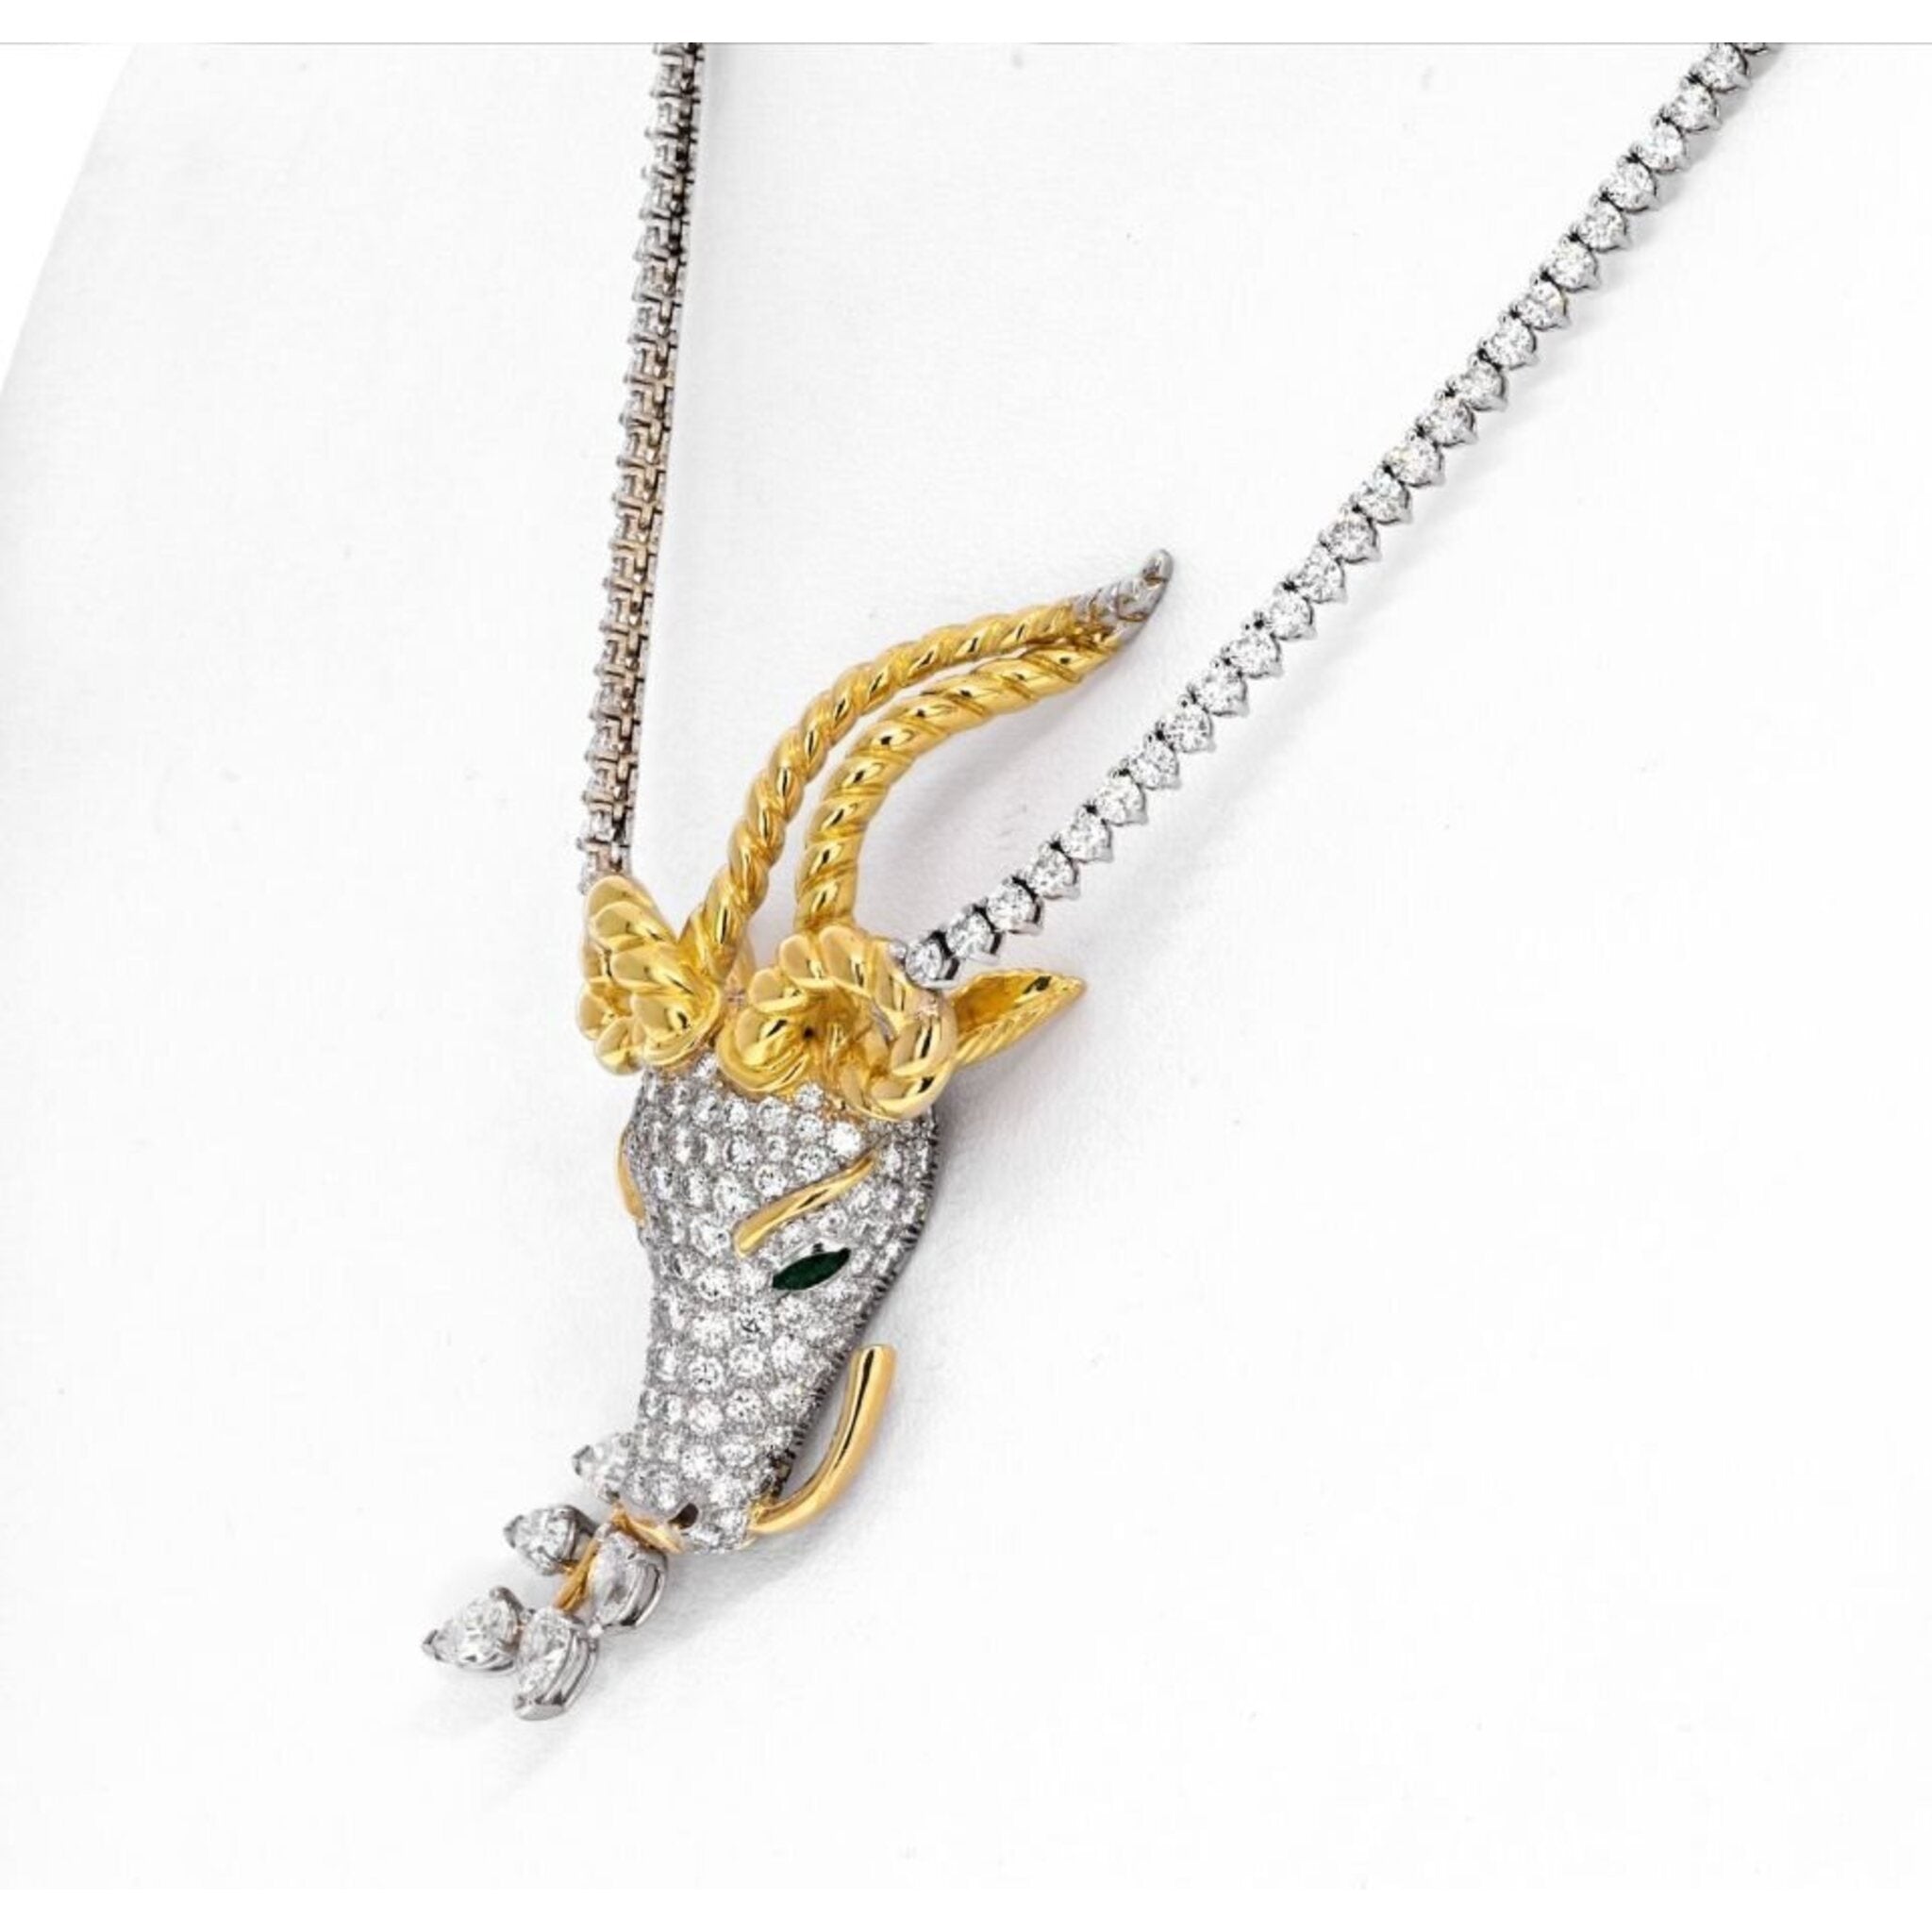 Tiffany & Co. 18K White Gold Signature Pearl Diamond Pendant Necklace